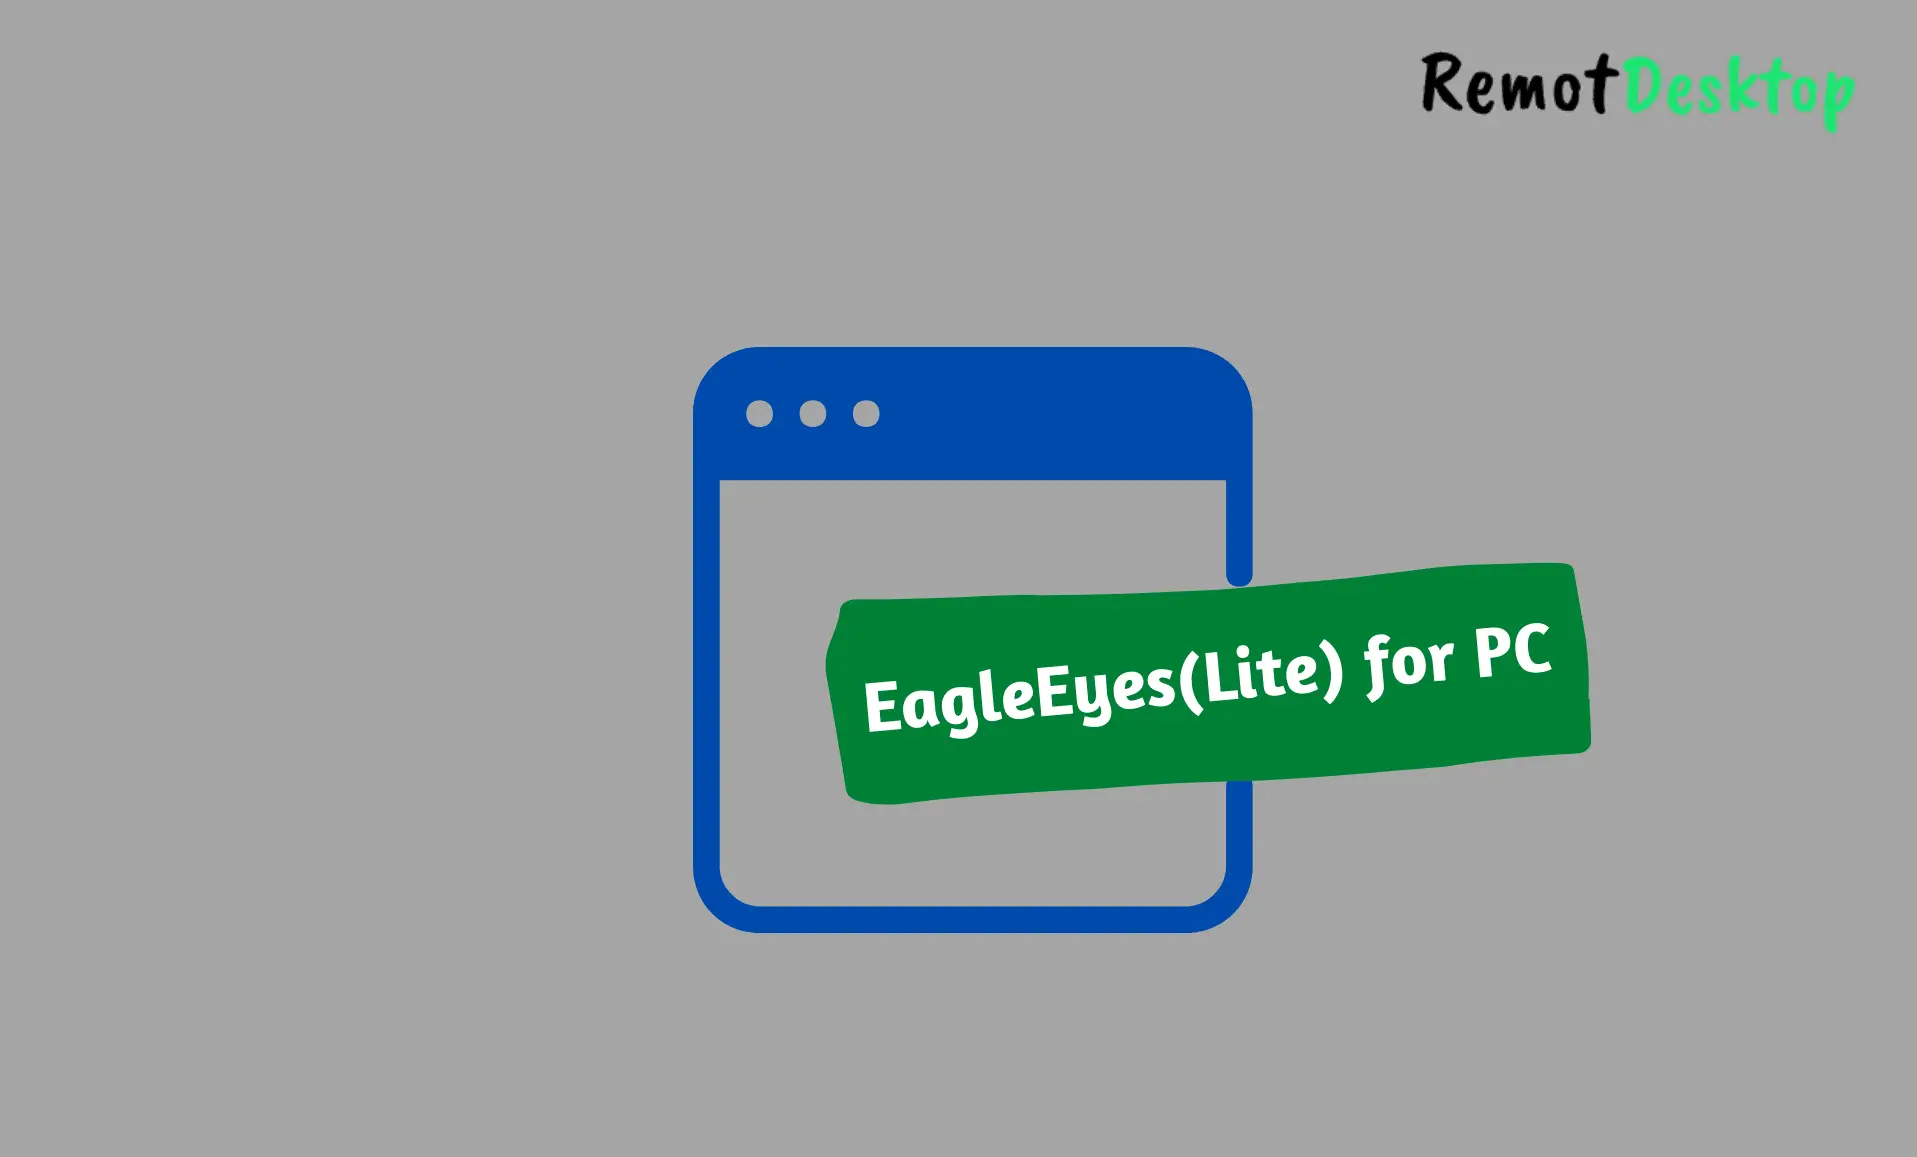 EagleEyes(Lite) for PC